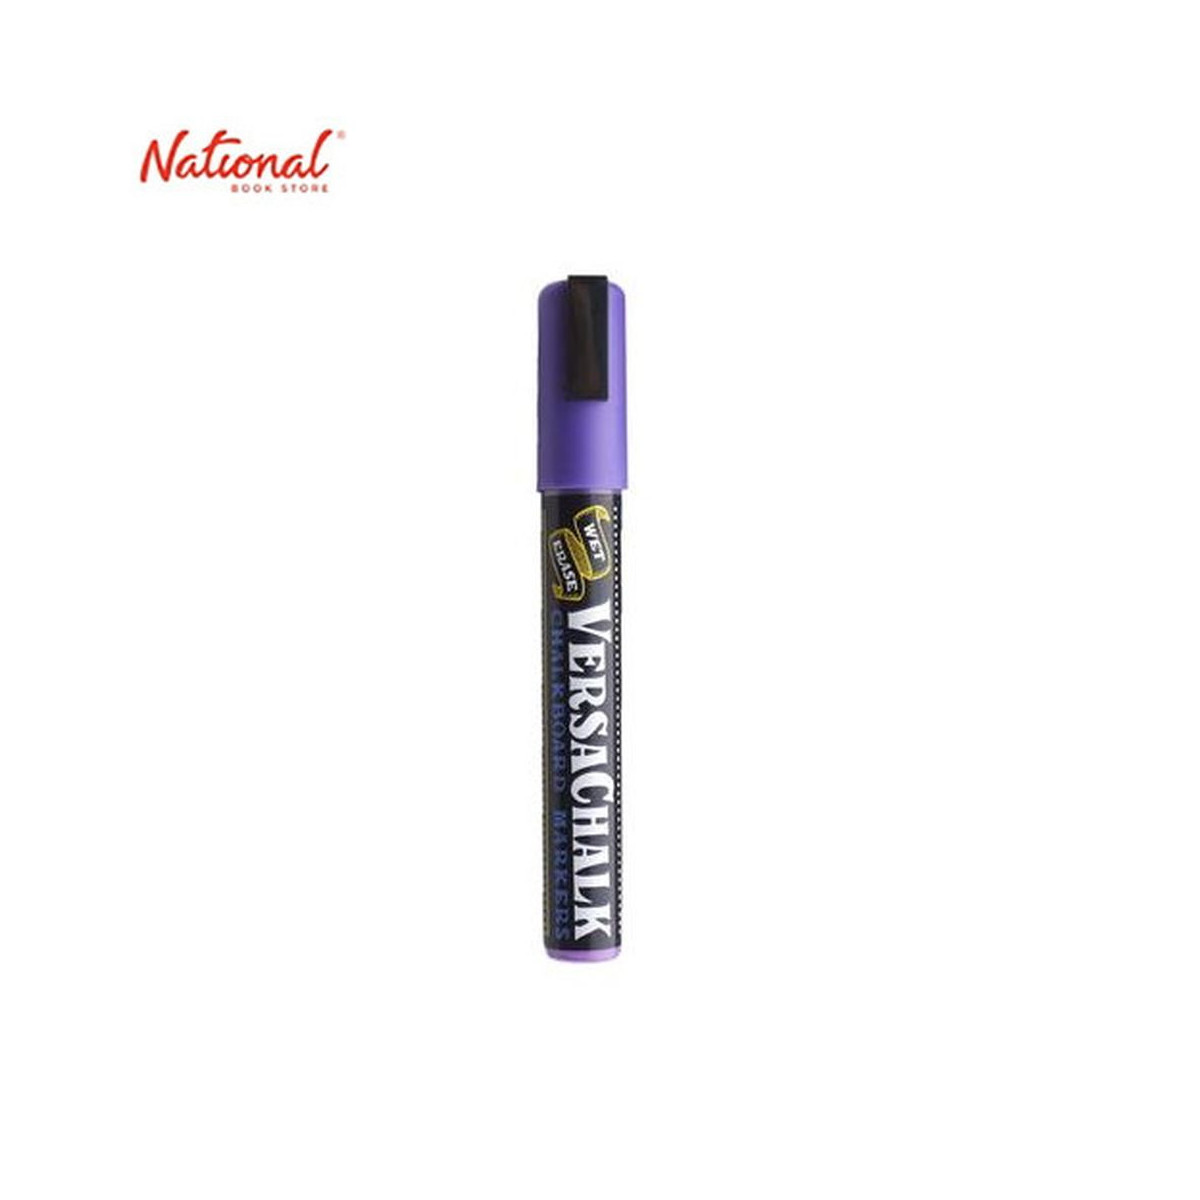 Versachalk Neon Purple Chalk Marker (Bold) Singles